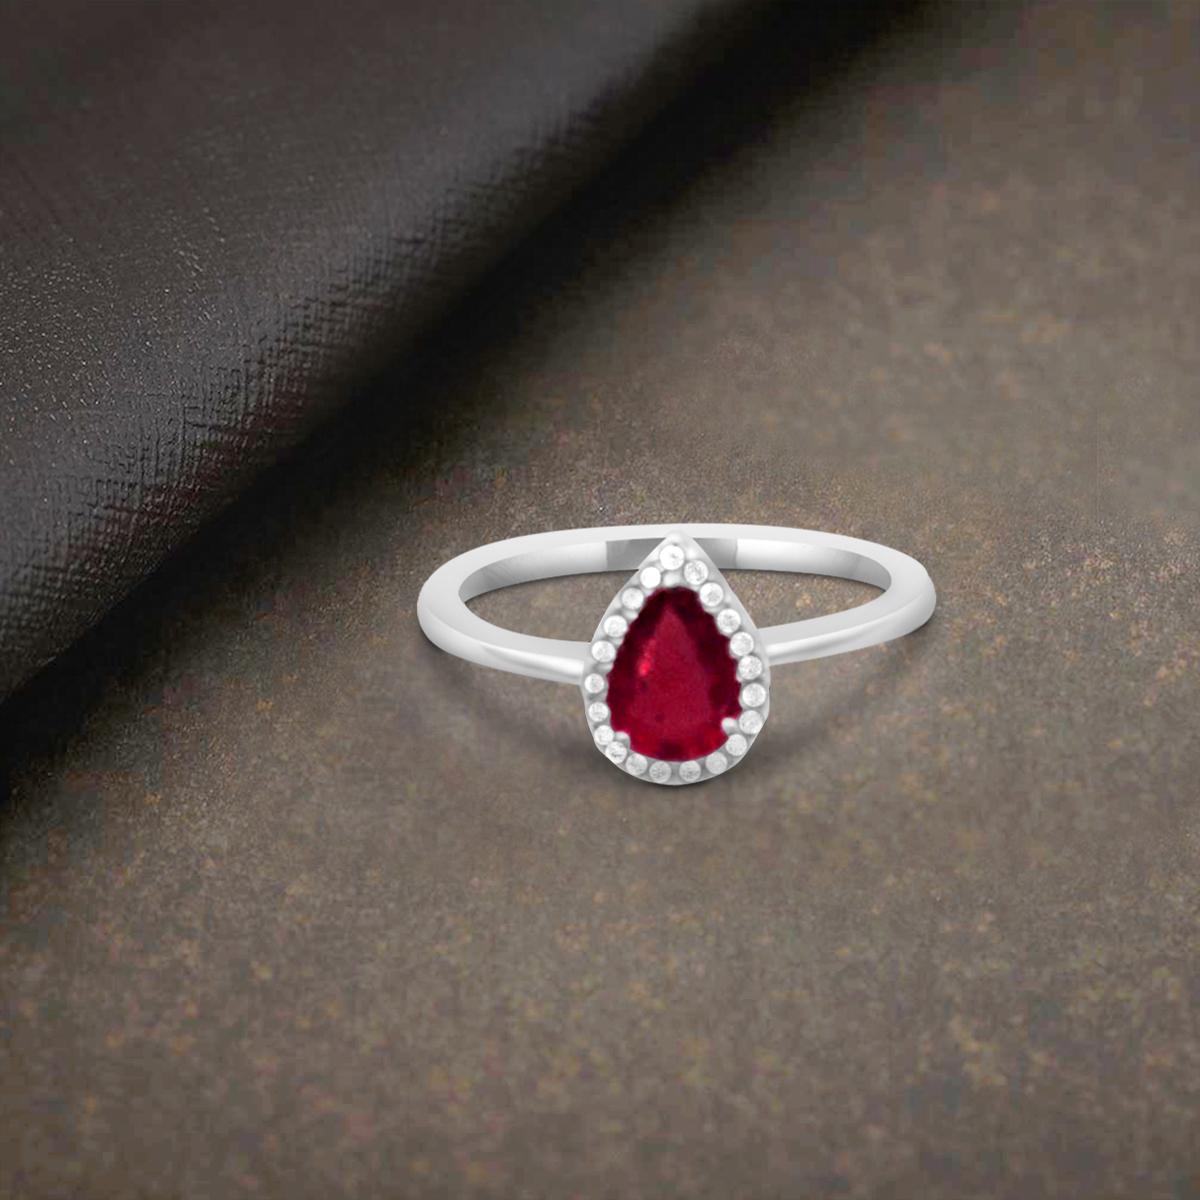 Bague en or blanc massif 18K en forme de poire, simulant un rubis rouge et un diamant blanc, ou bague Fashion Band avec solitaire en forme de halo serti à la griffe.
Cette magnifique bague est ornée d'une étonnante pierre précieuse en forme de poire